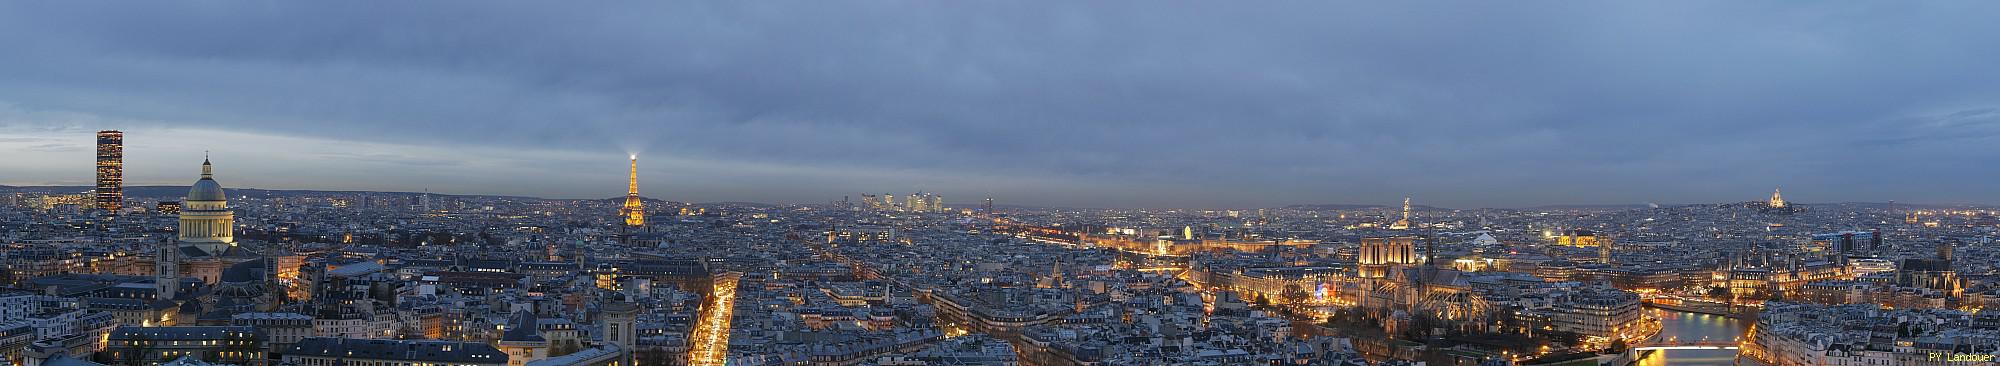 Paris vu d'en haut,  tour Zamansky